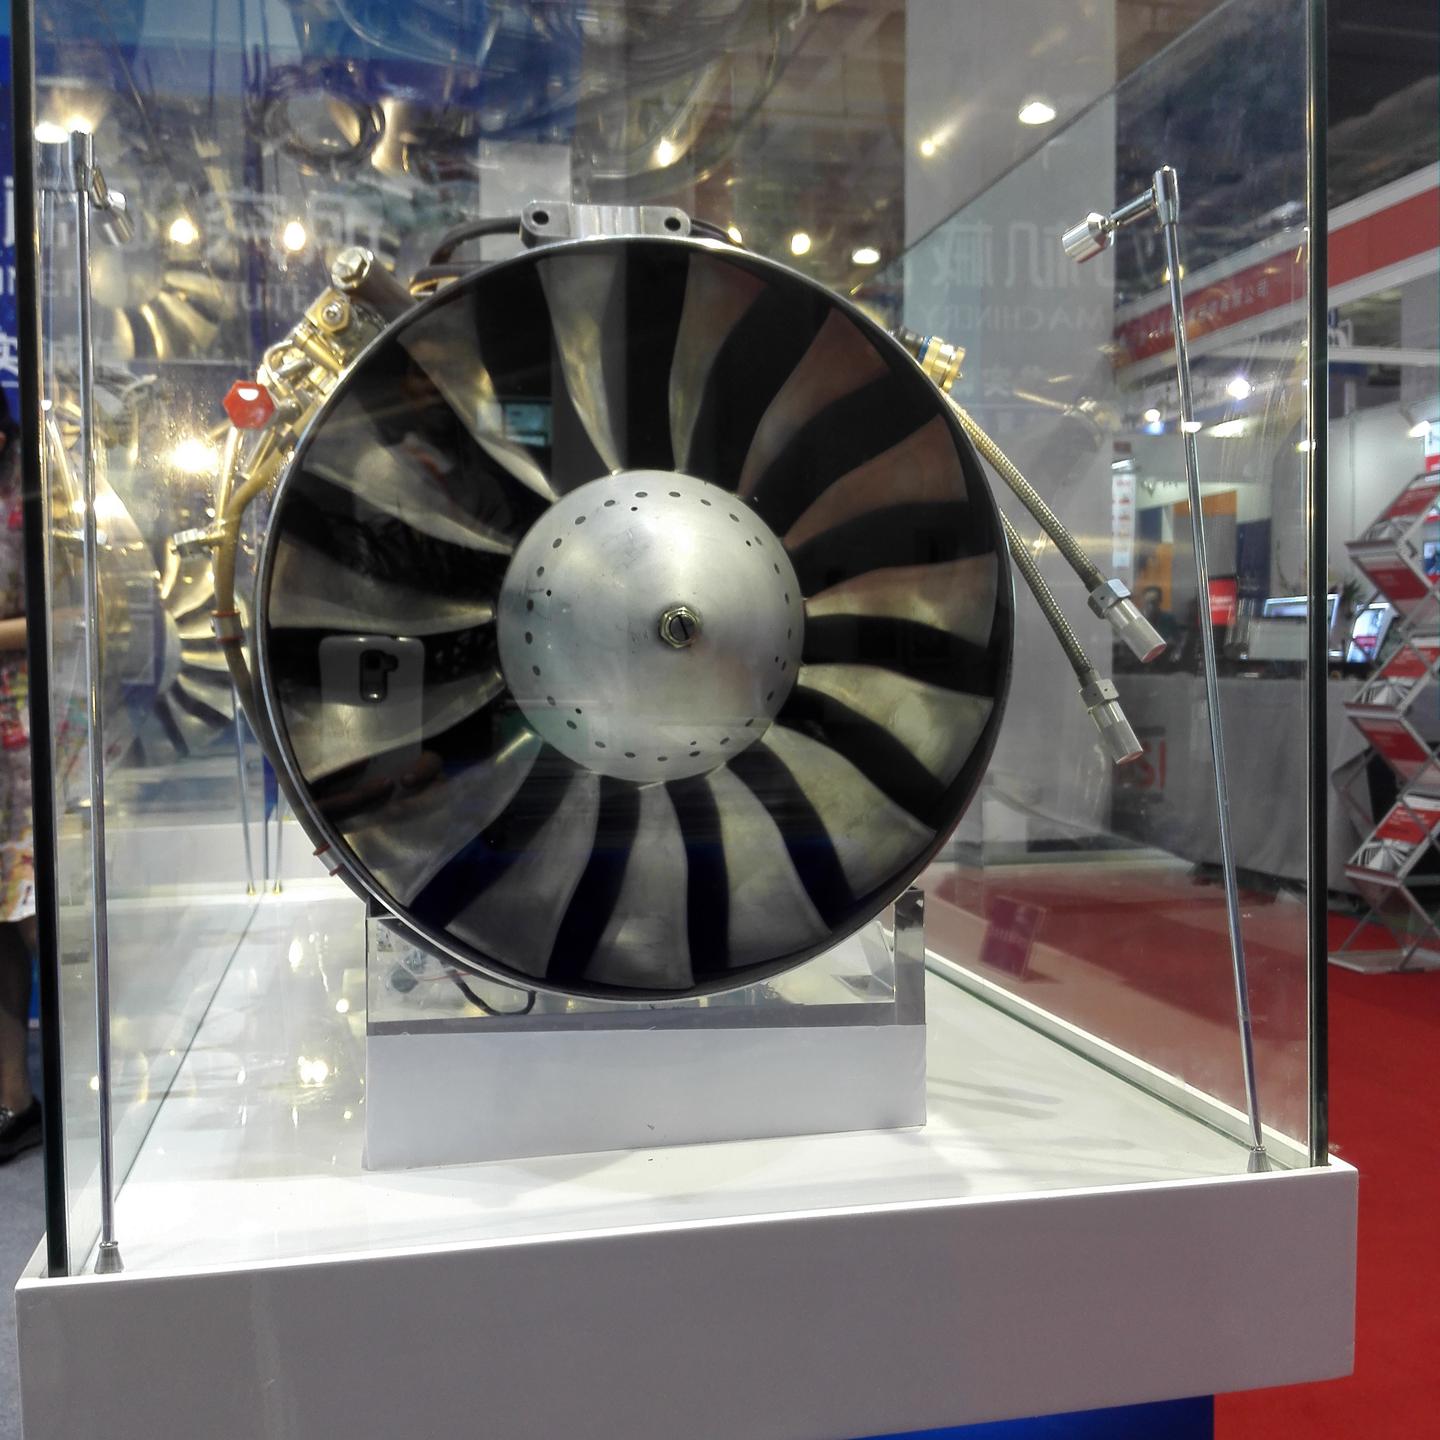 3涡扇发动机是北京动力机械研究所自主研制的650kgf推力量级,双转子